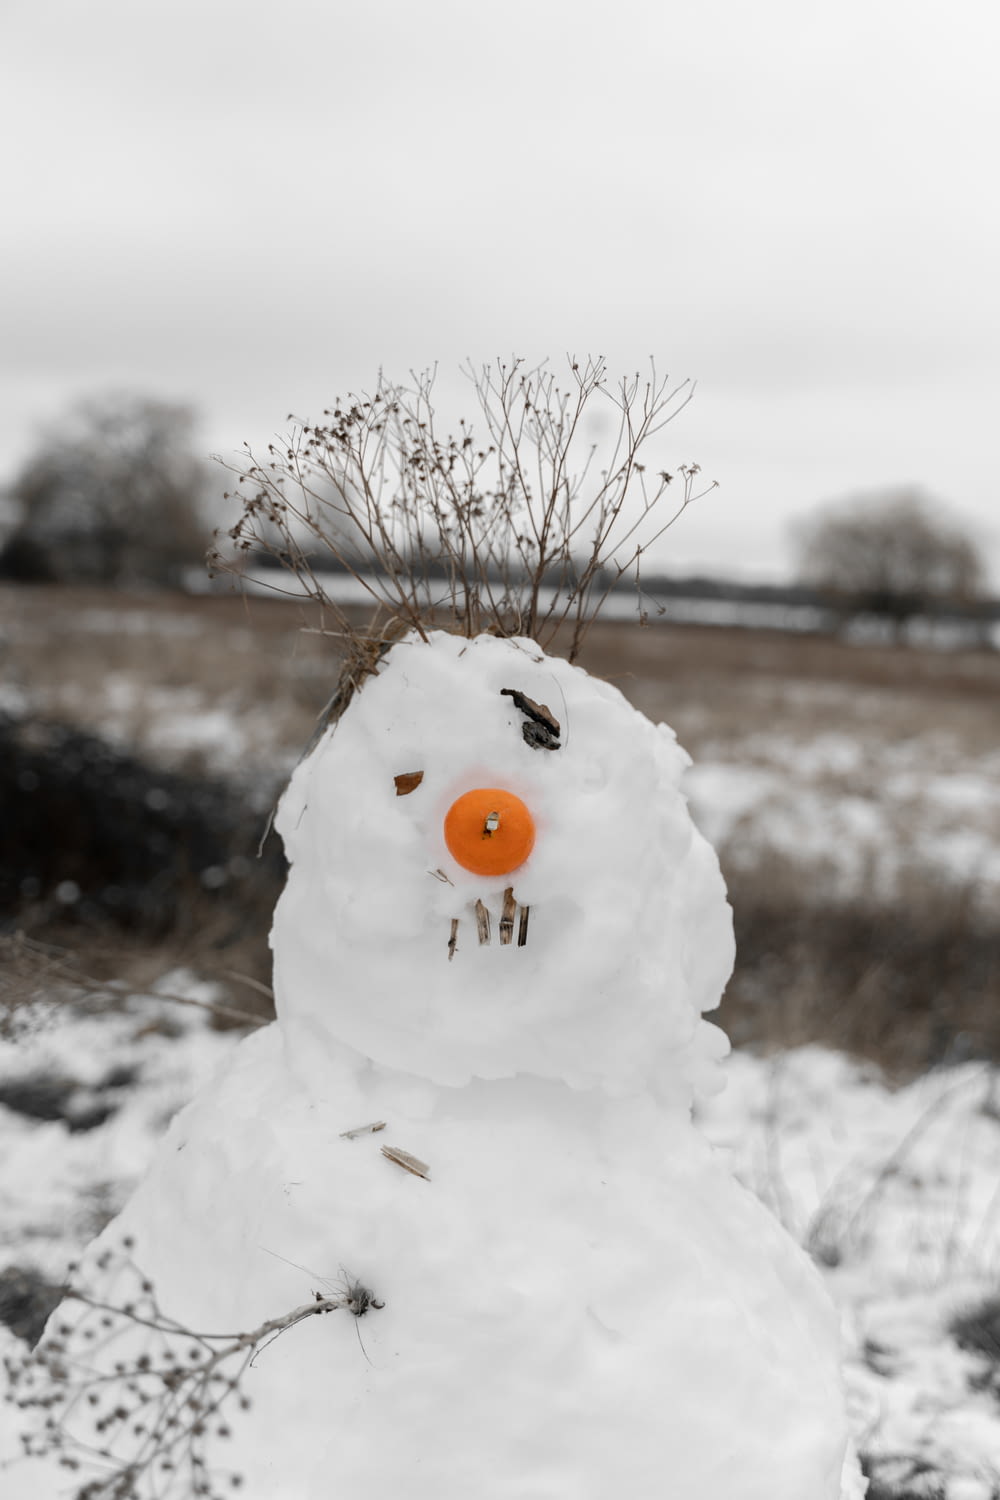 white snowman with orange round fruit